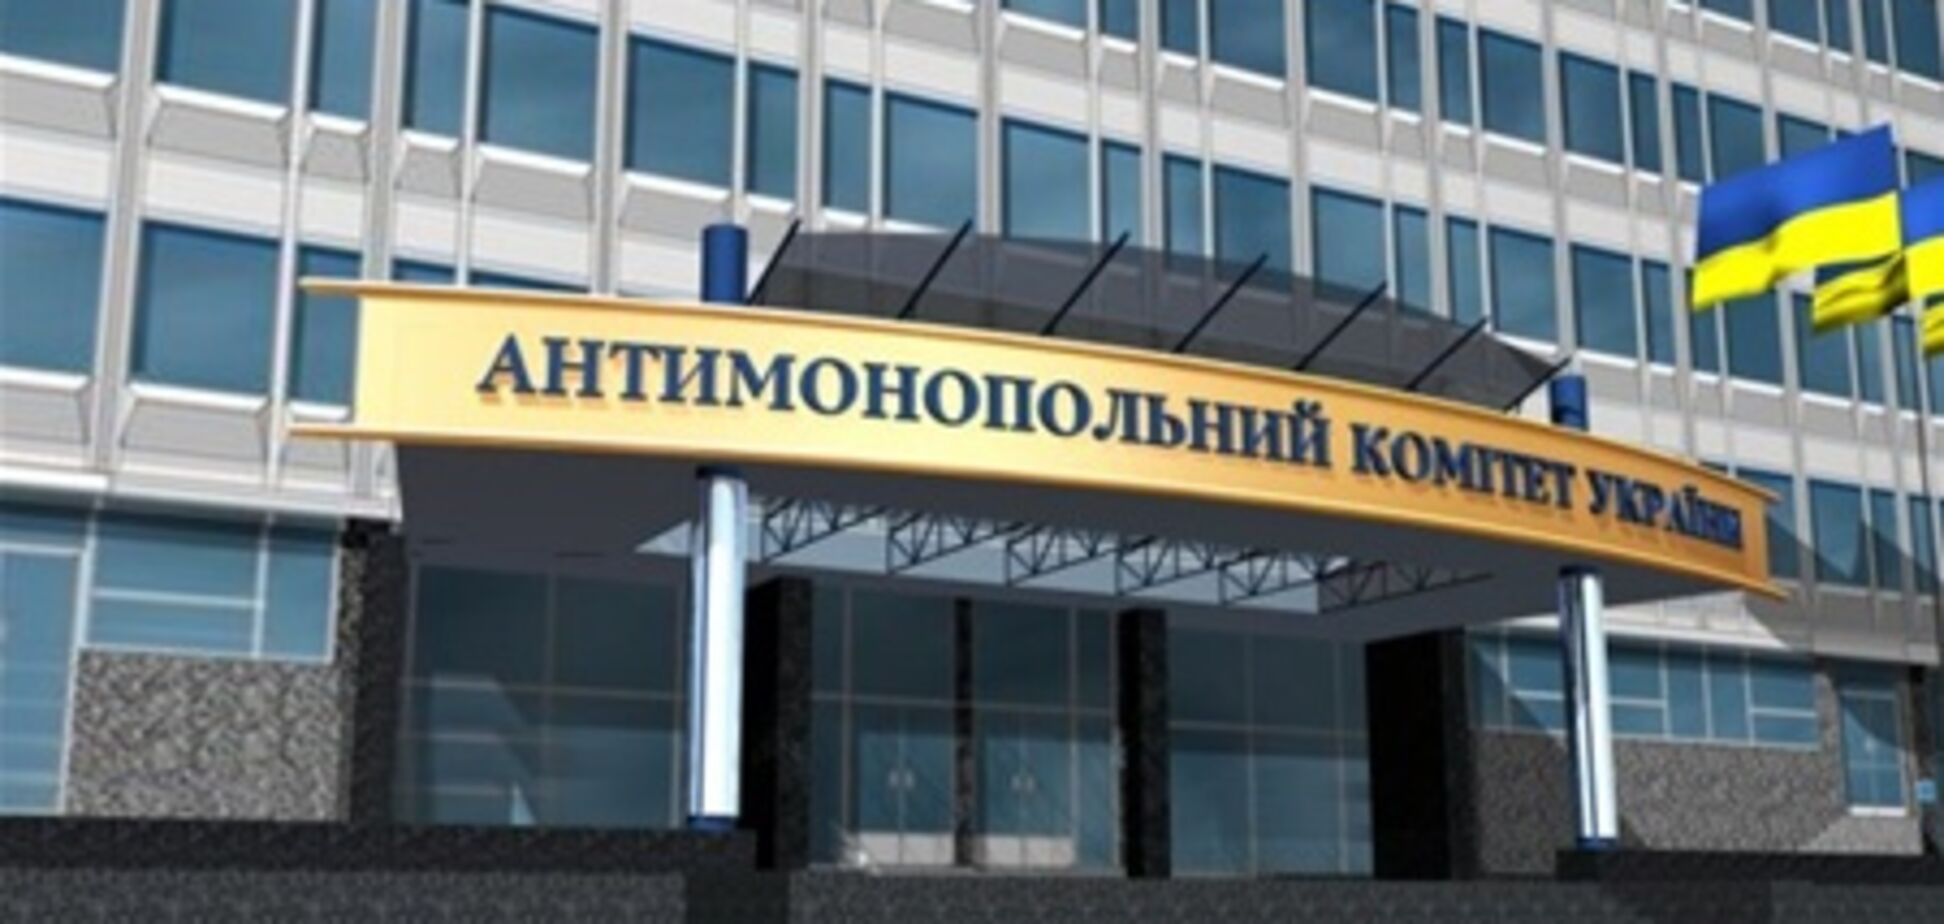 Рада увеличила штраф за нарушение антимонопольного законодательства